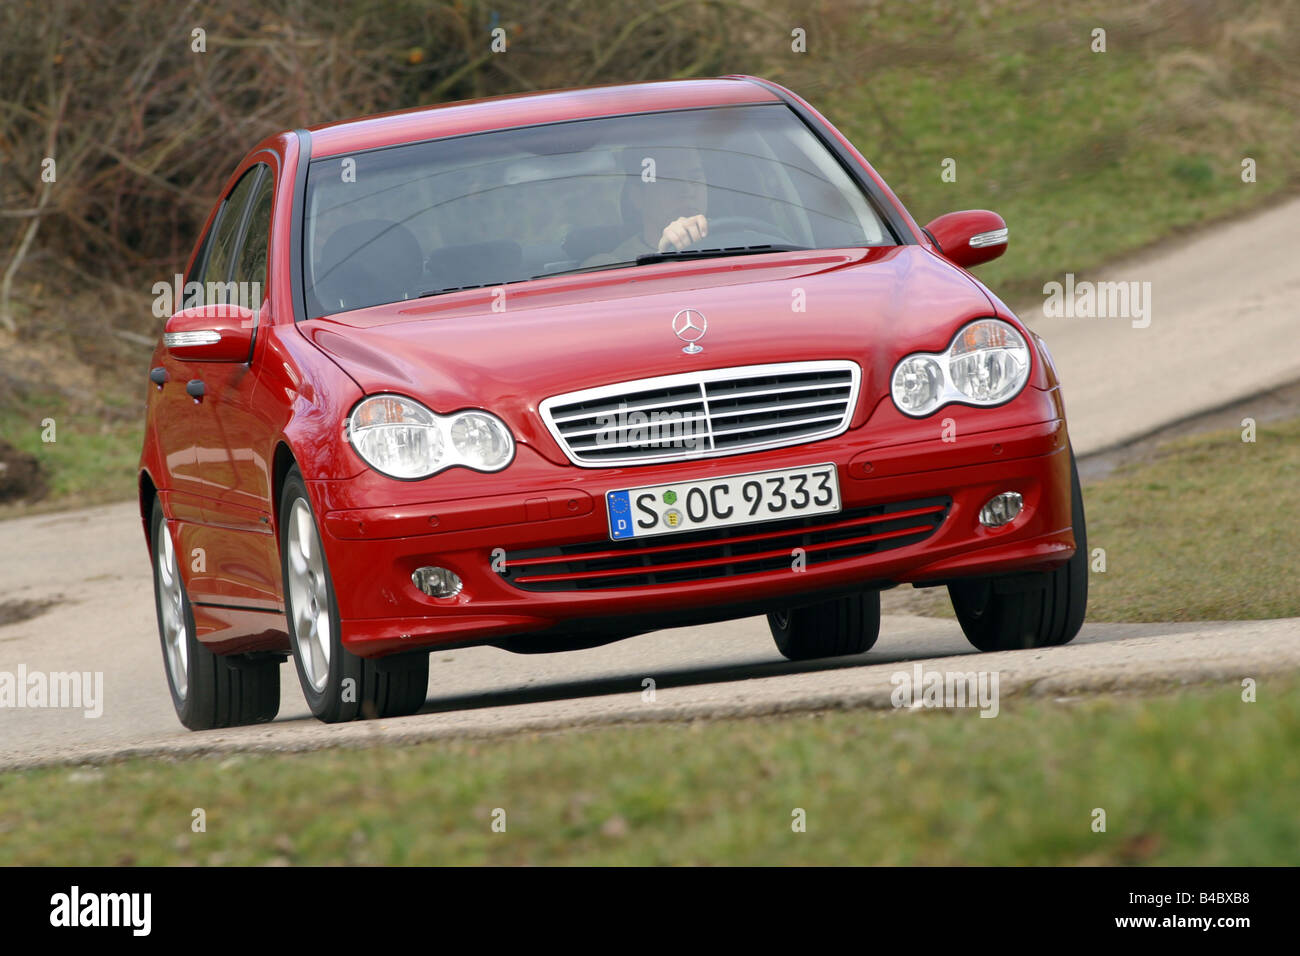 Auto, Mercedes C 220 CDI, Limousine, classe media, modello anno 2004-,  rosso, guida, diagonale dalla parte anteriore, vista frontale, paese Foto  stock - Alamy